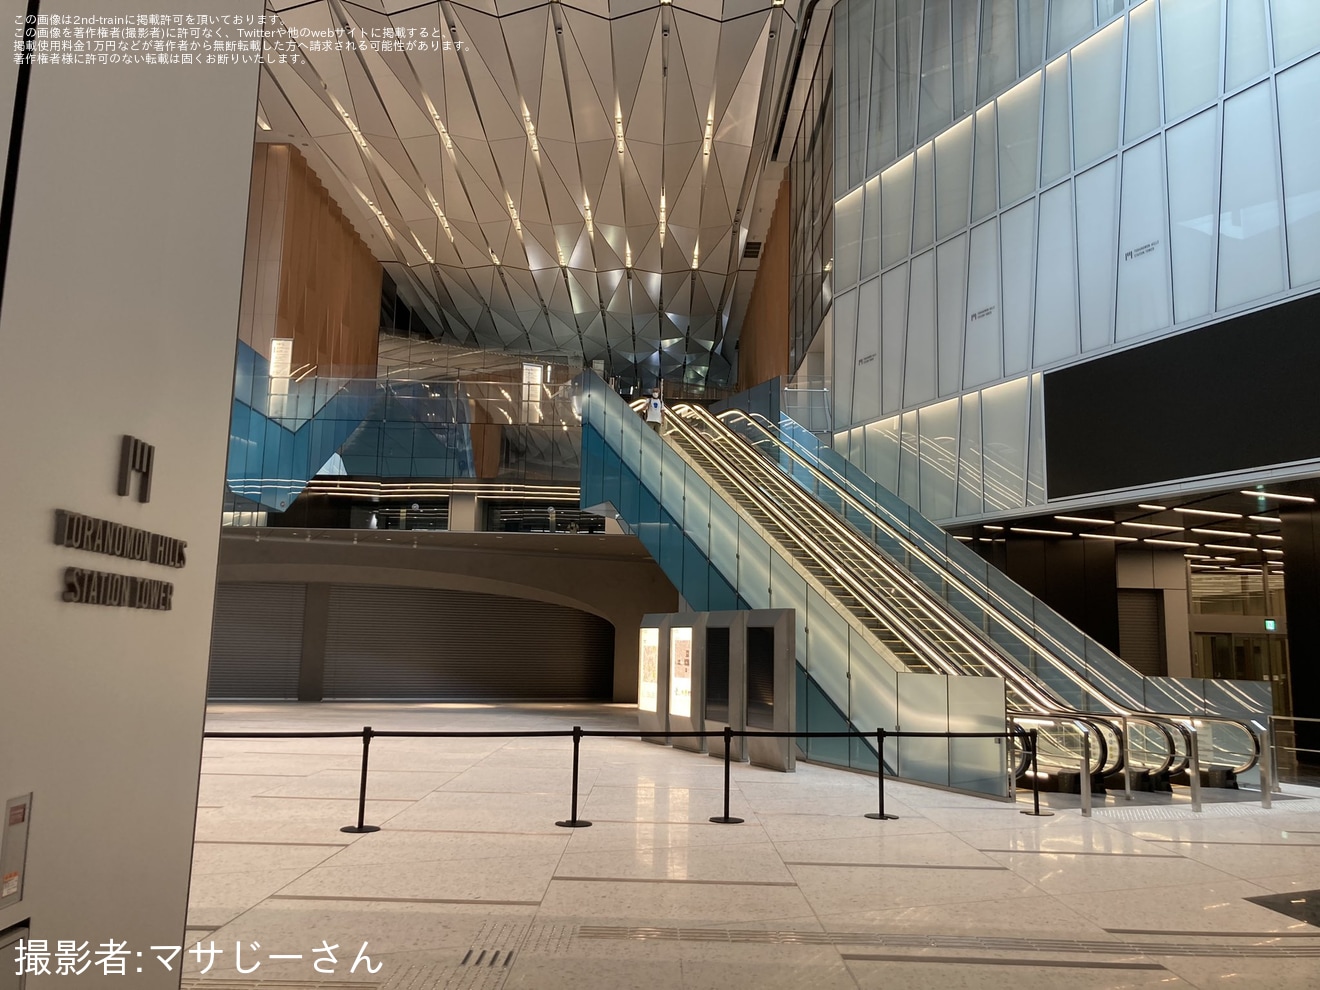 【メトロ】虎ノ門ヒルズ駅拡張の拡大写真